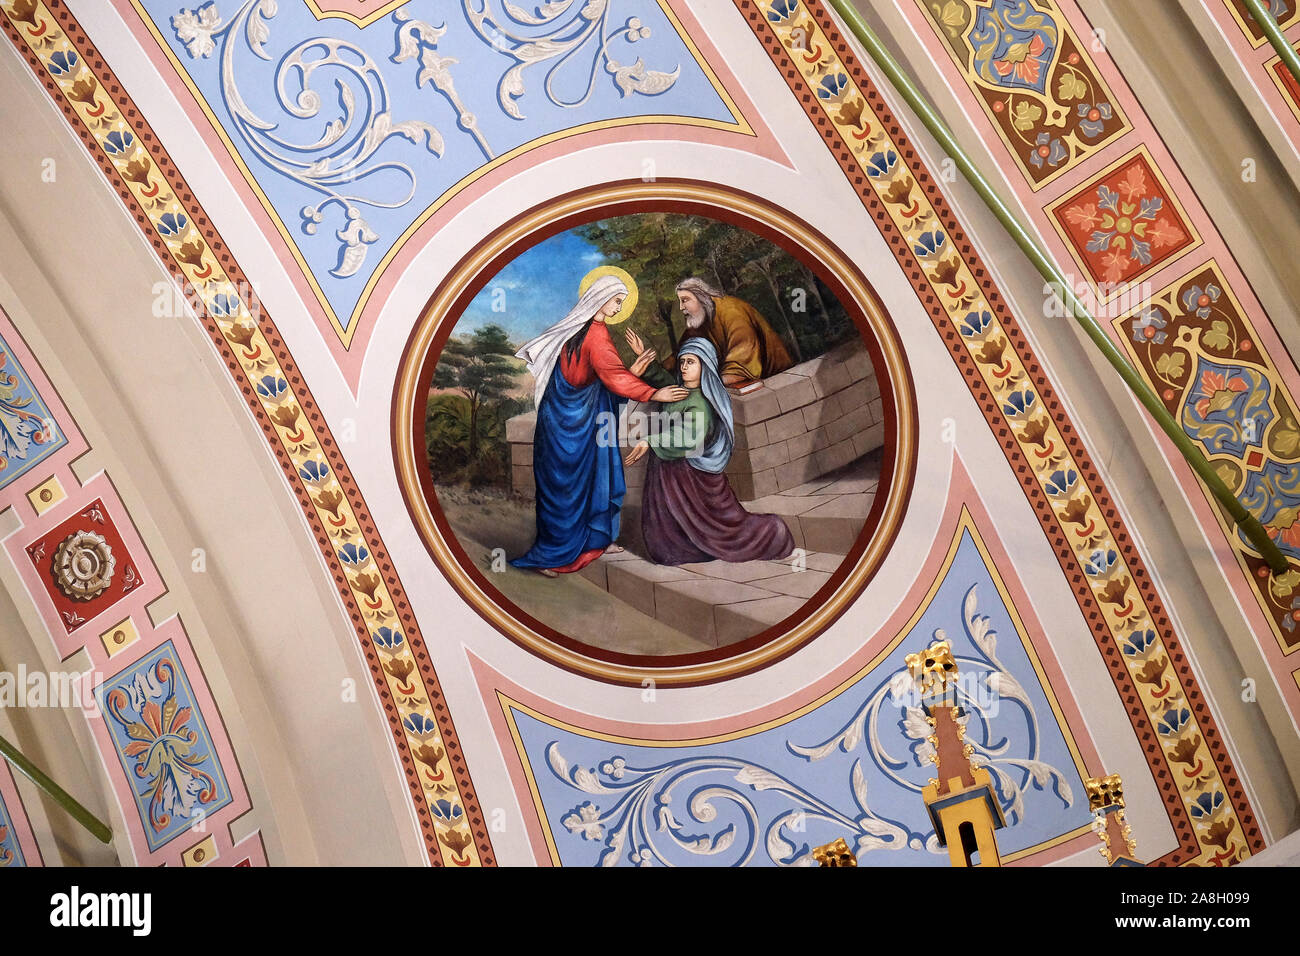 Besuch der Jungfrau Maria, Fresko in der Kirche des hl. Matthäus in Stitar, Kroatien Stockfoto